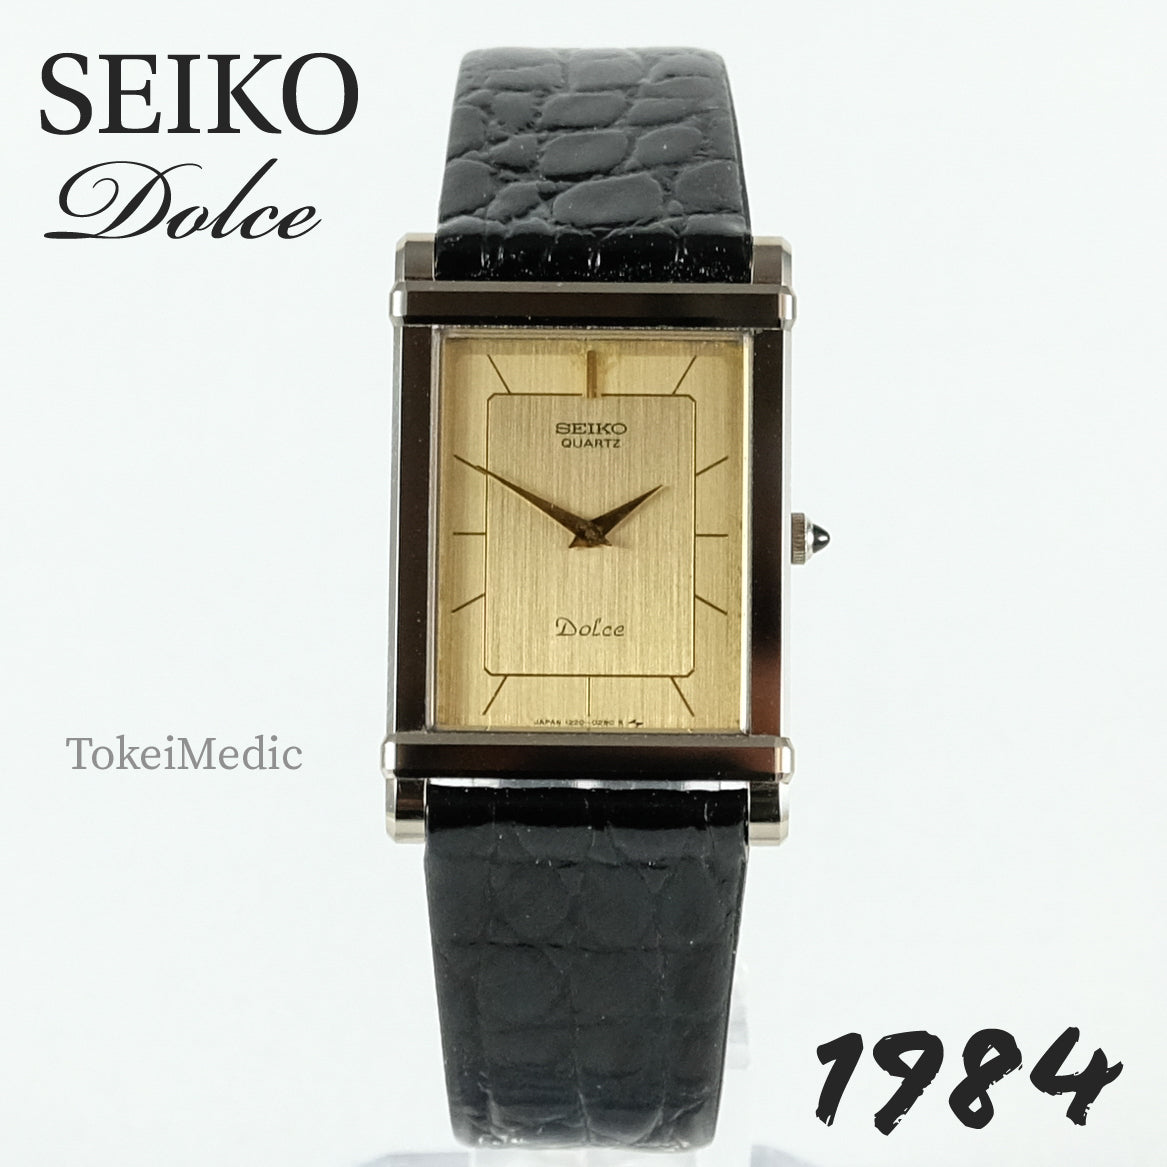 1984 Seiko Dolce 1220-5110